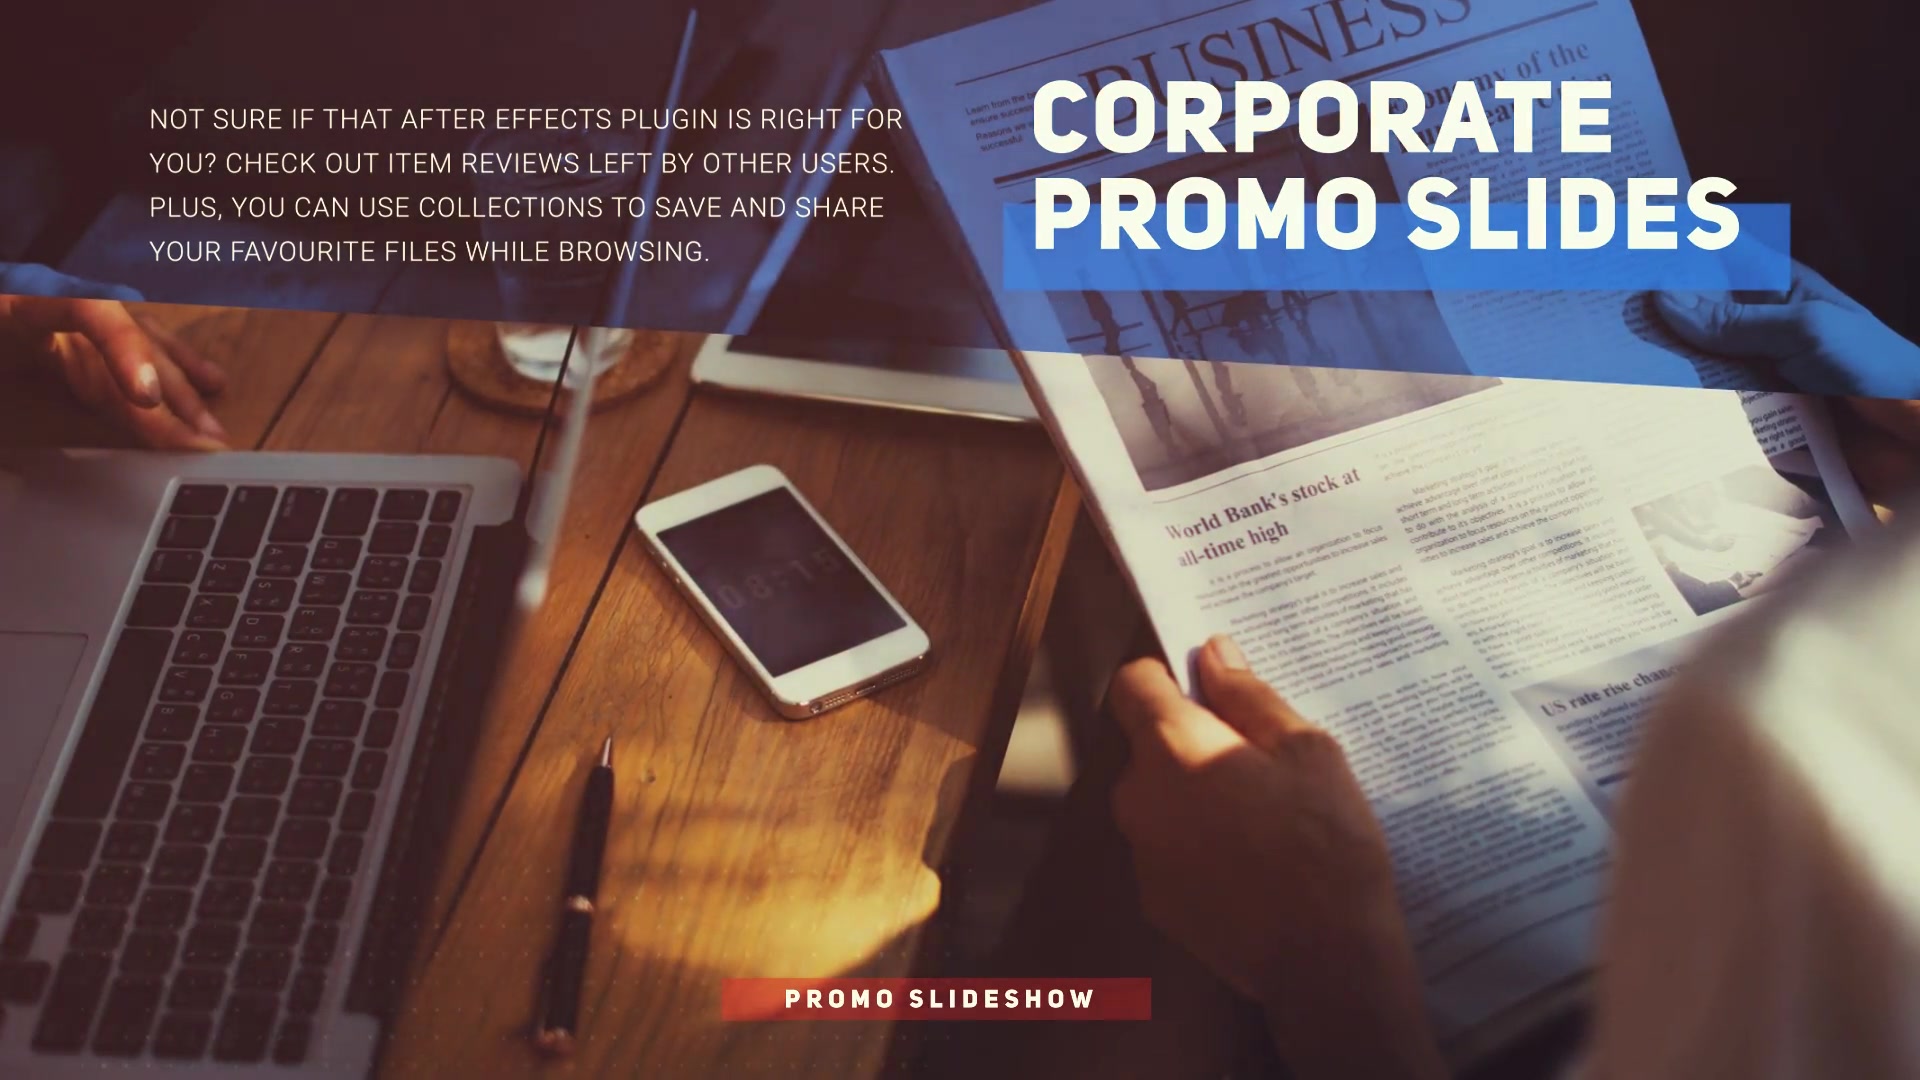 Corporate Slideshow Videohive 36709986 Premiere Pro Image 7